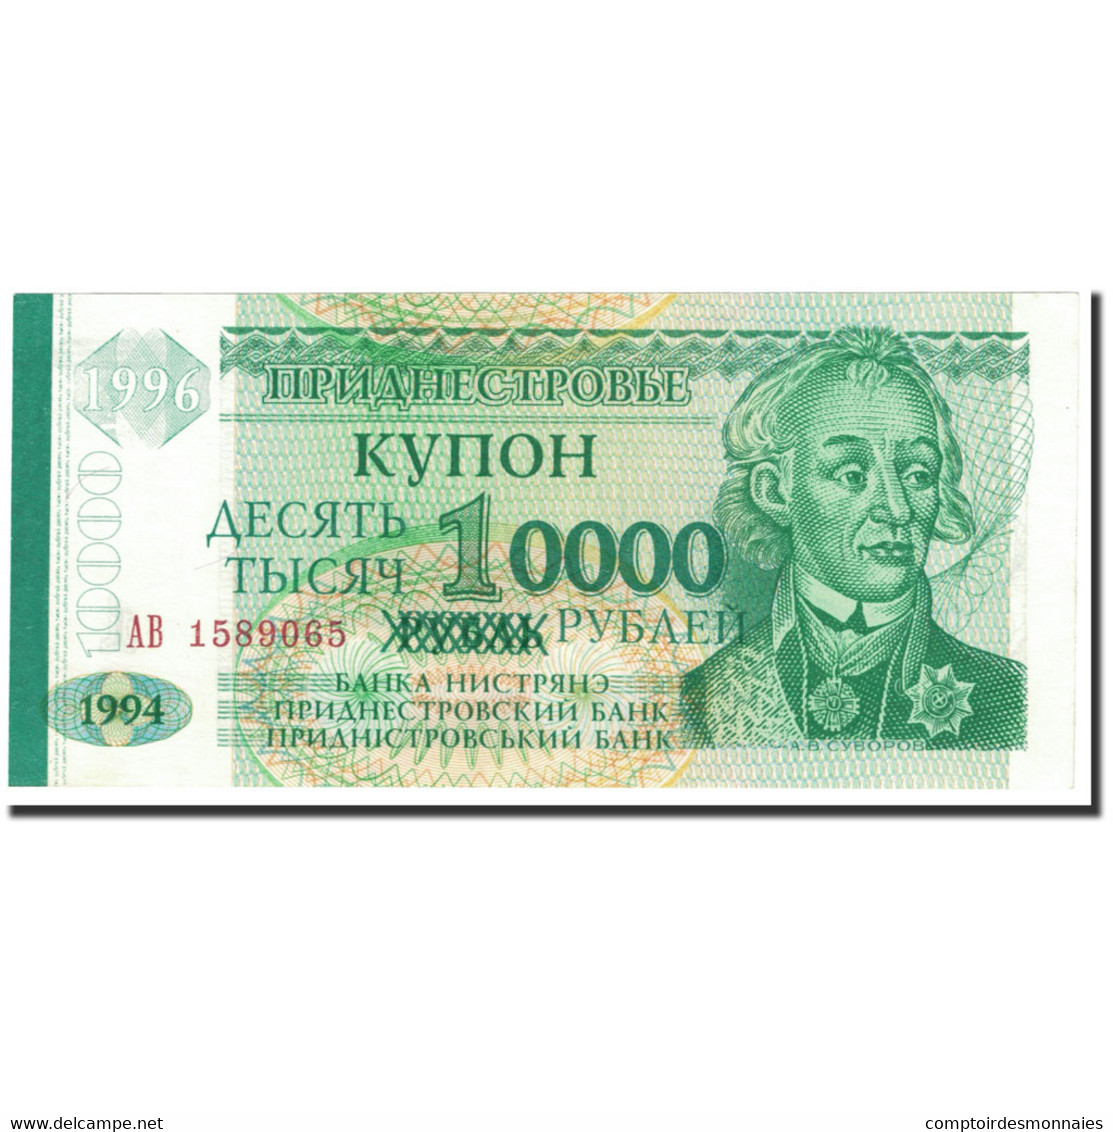 Billet, Transnistrie, 10,000 Rublei On 1 Ruble, 1996, OLD DATE (1994), KM:29 - Moldavie